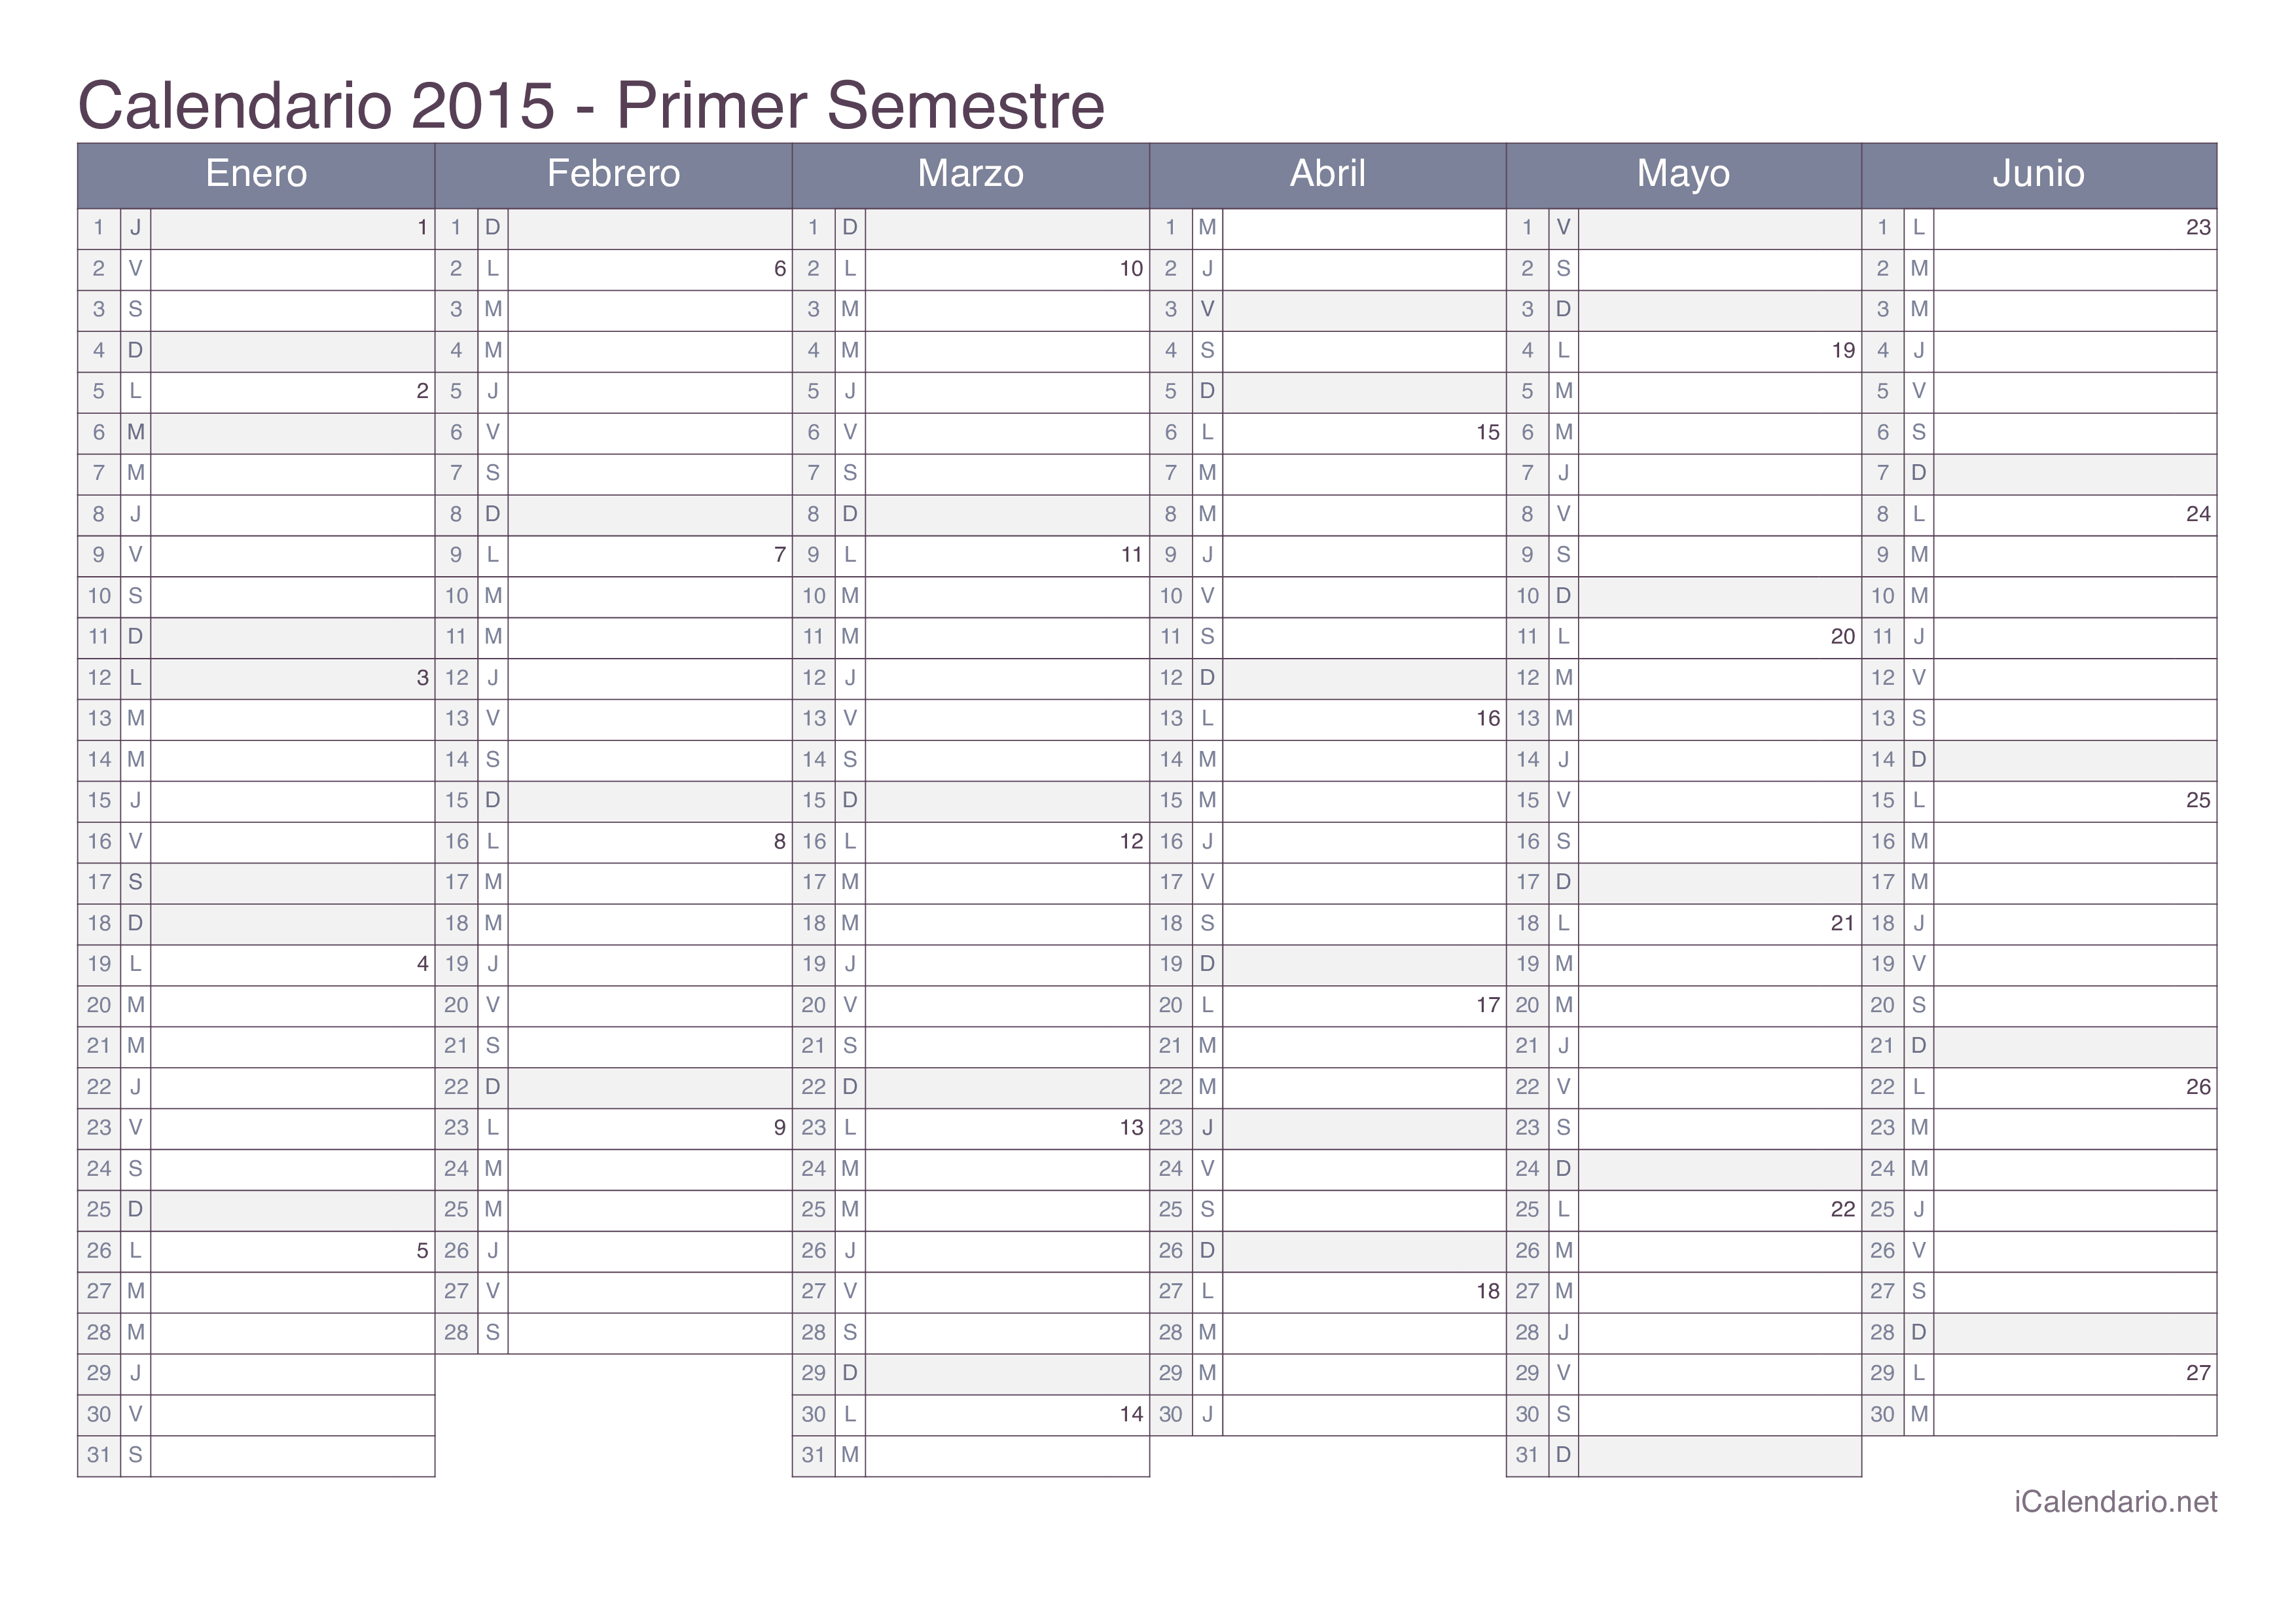 Calendario por semestre com números da semana 2015 - Office